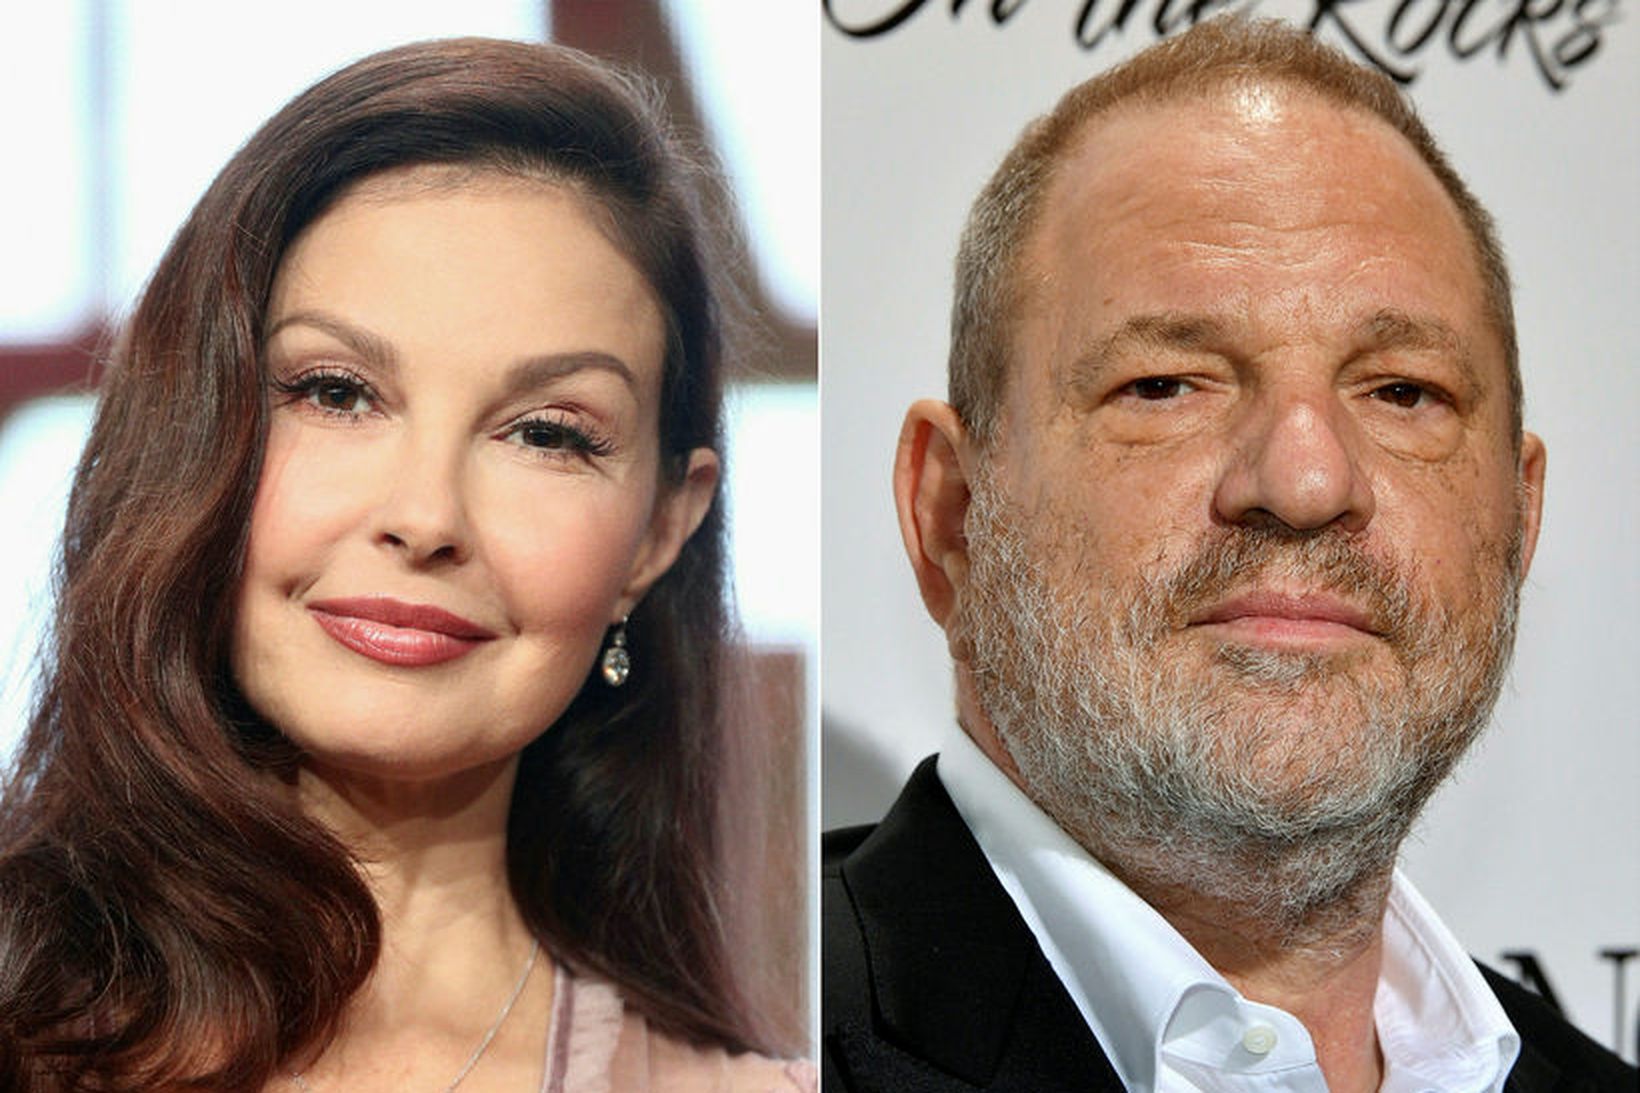 Leikkonan Ashley Judd hefur höfðað mál á hendur Harvey Weinstein.